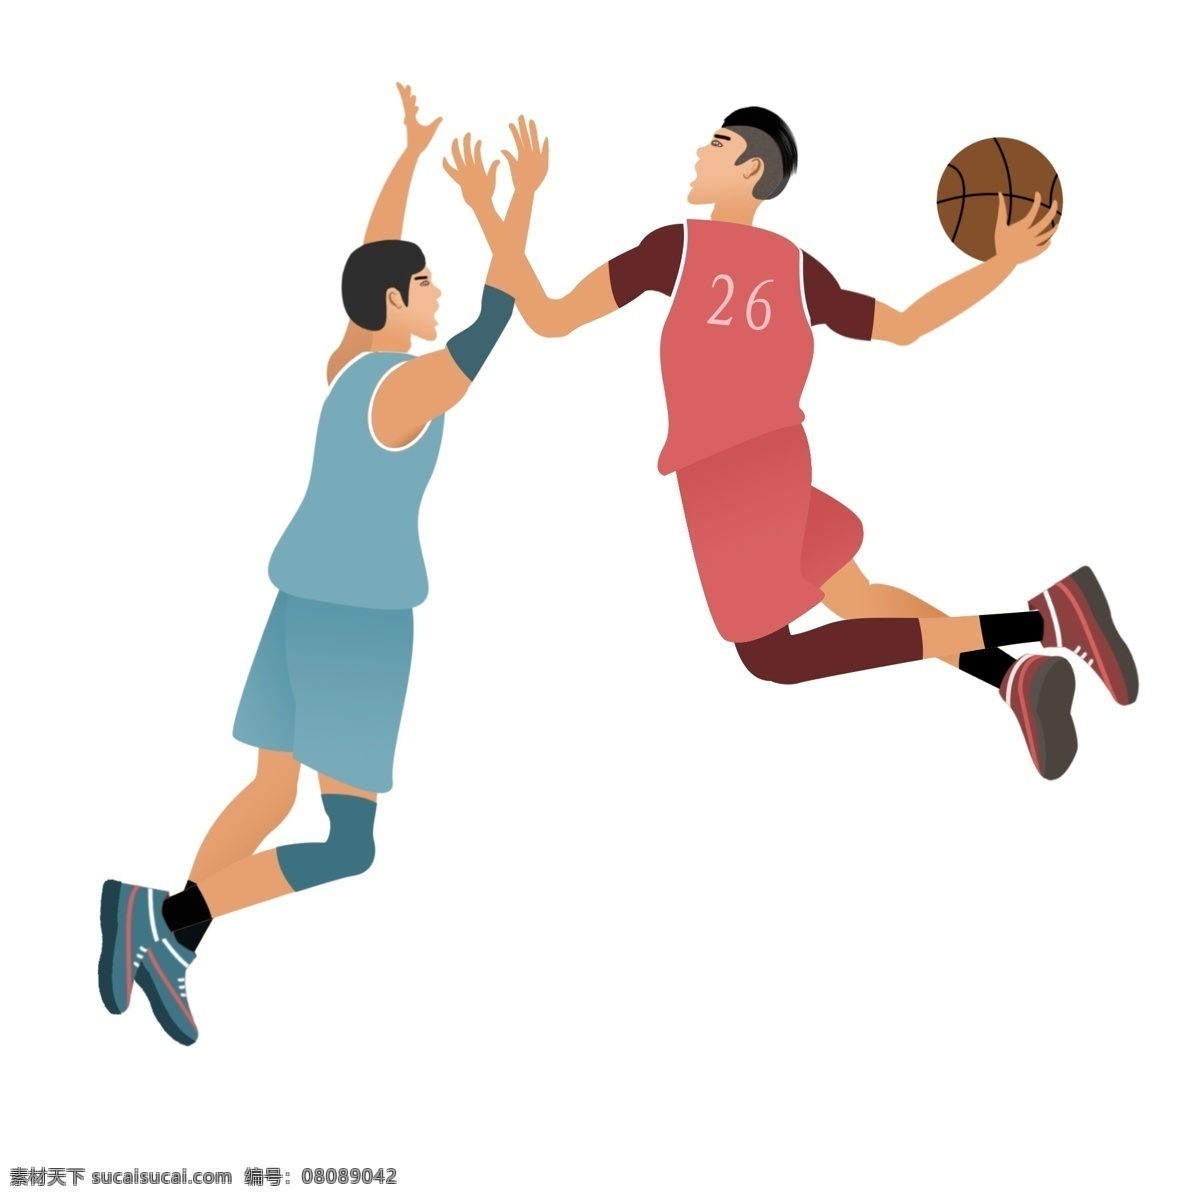 卡通 人物 球员 打球 场景 篮球比赛 体育运动 卡通人物 国际篮球日 打球场景